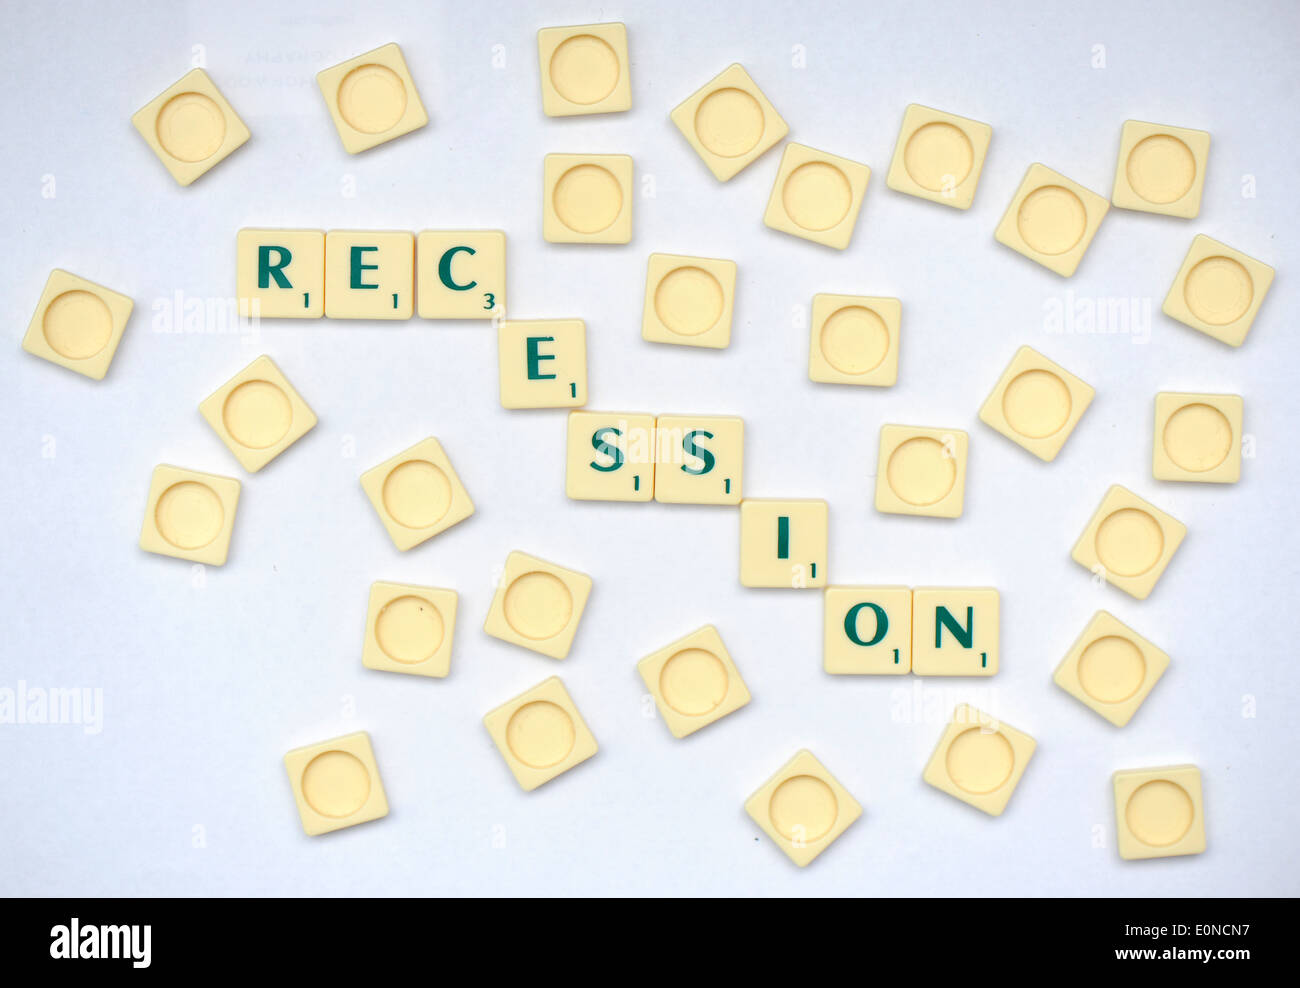 Piastrelle Scrabble la lettura della parola recessione. Foto Stock